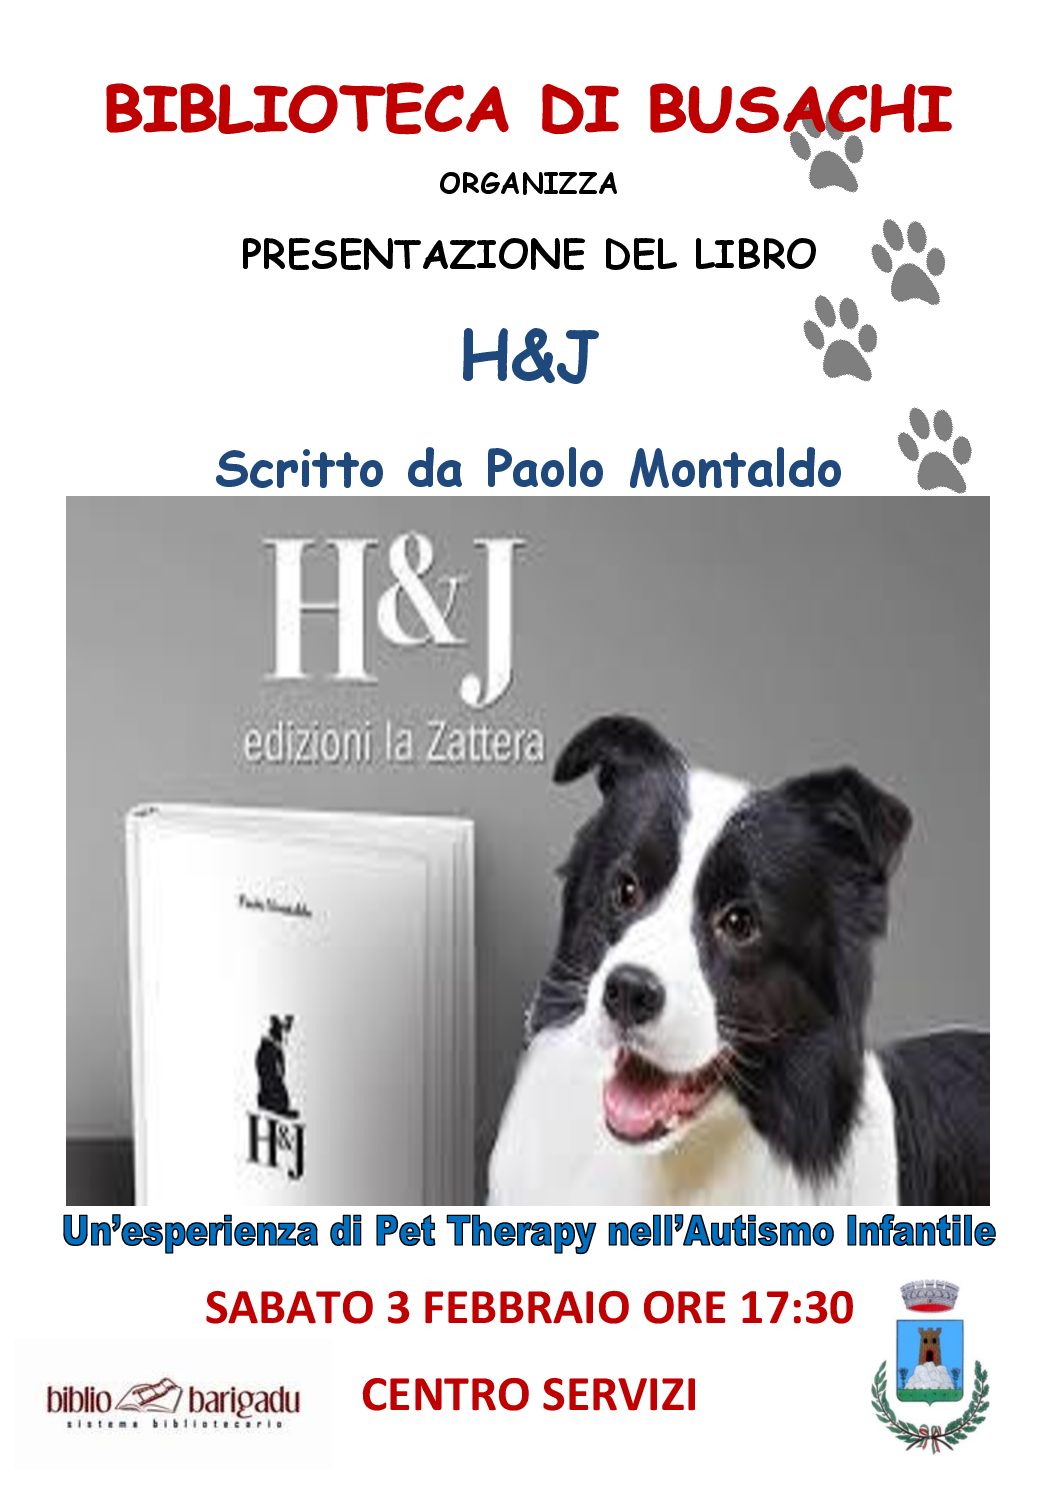 Biblioteca Comunale di Busachi organizza la presentazione del libro: “H&J : un’sperienza di Pet Therapy nell’autismo infantile” Sabato 03 febbraio 2018 alle ore 17:30 presso il Centro Servizi – BUSACHI